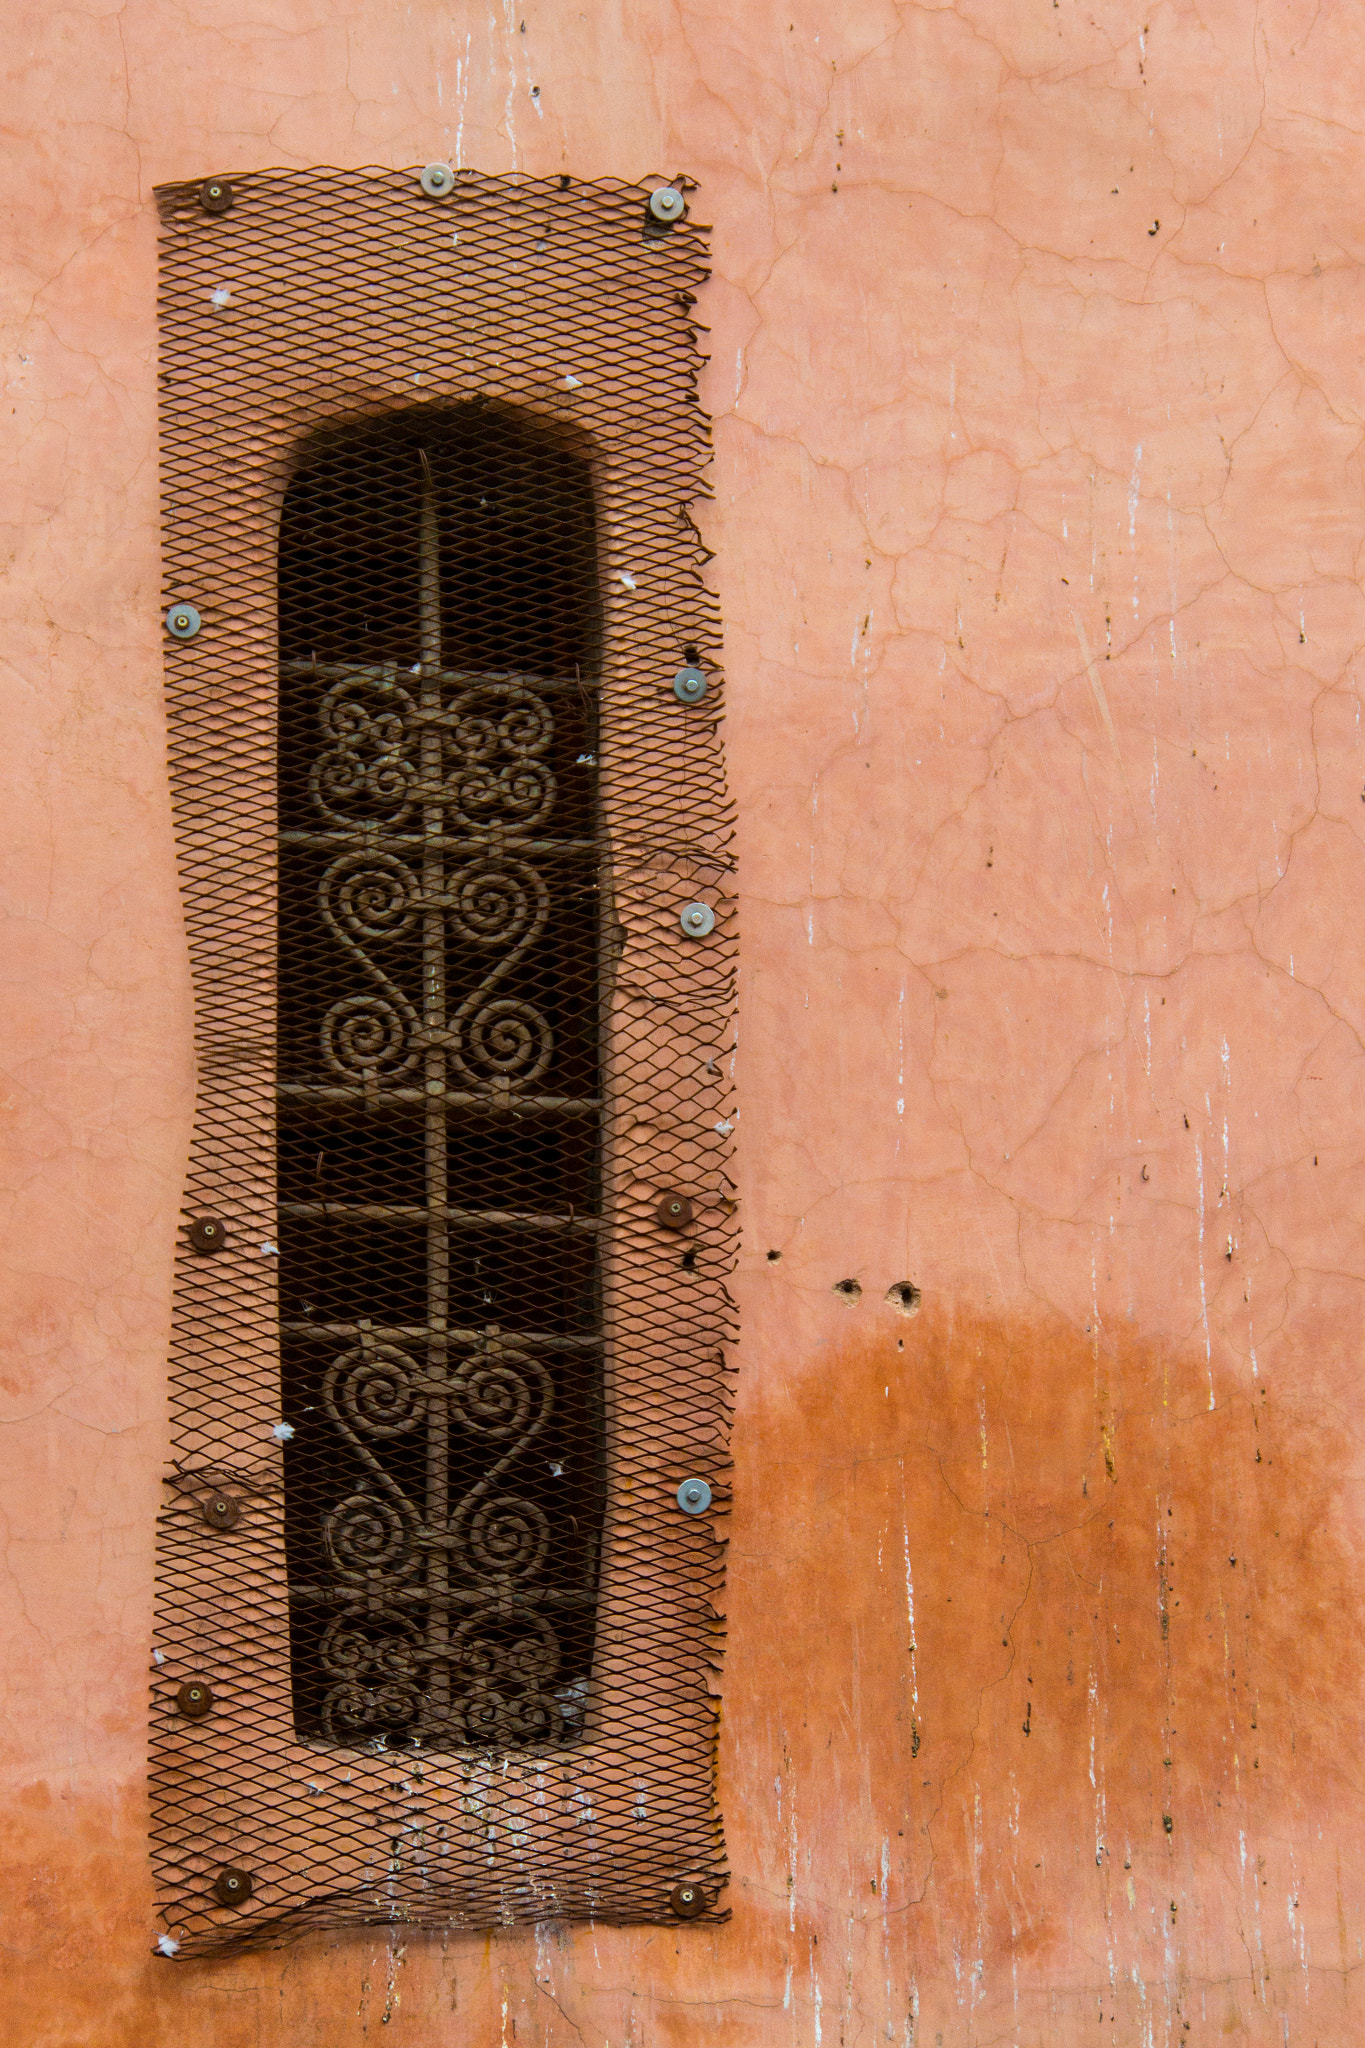 Nikon 1 V2 sample photo. Marrakech photography